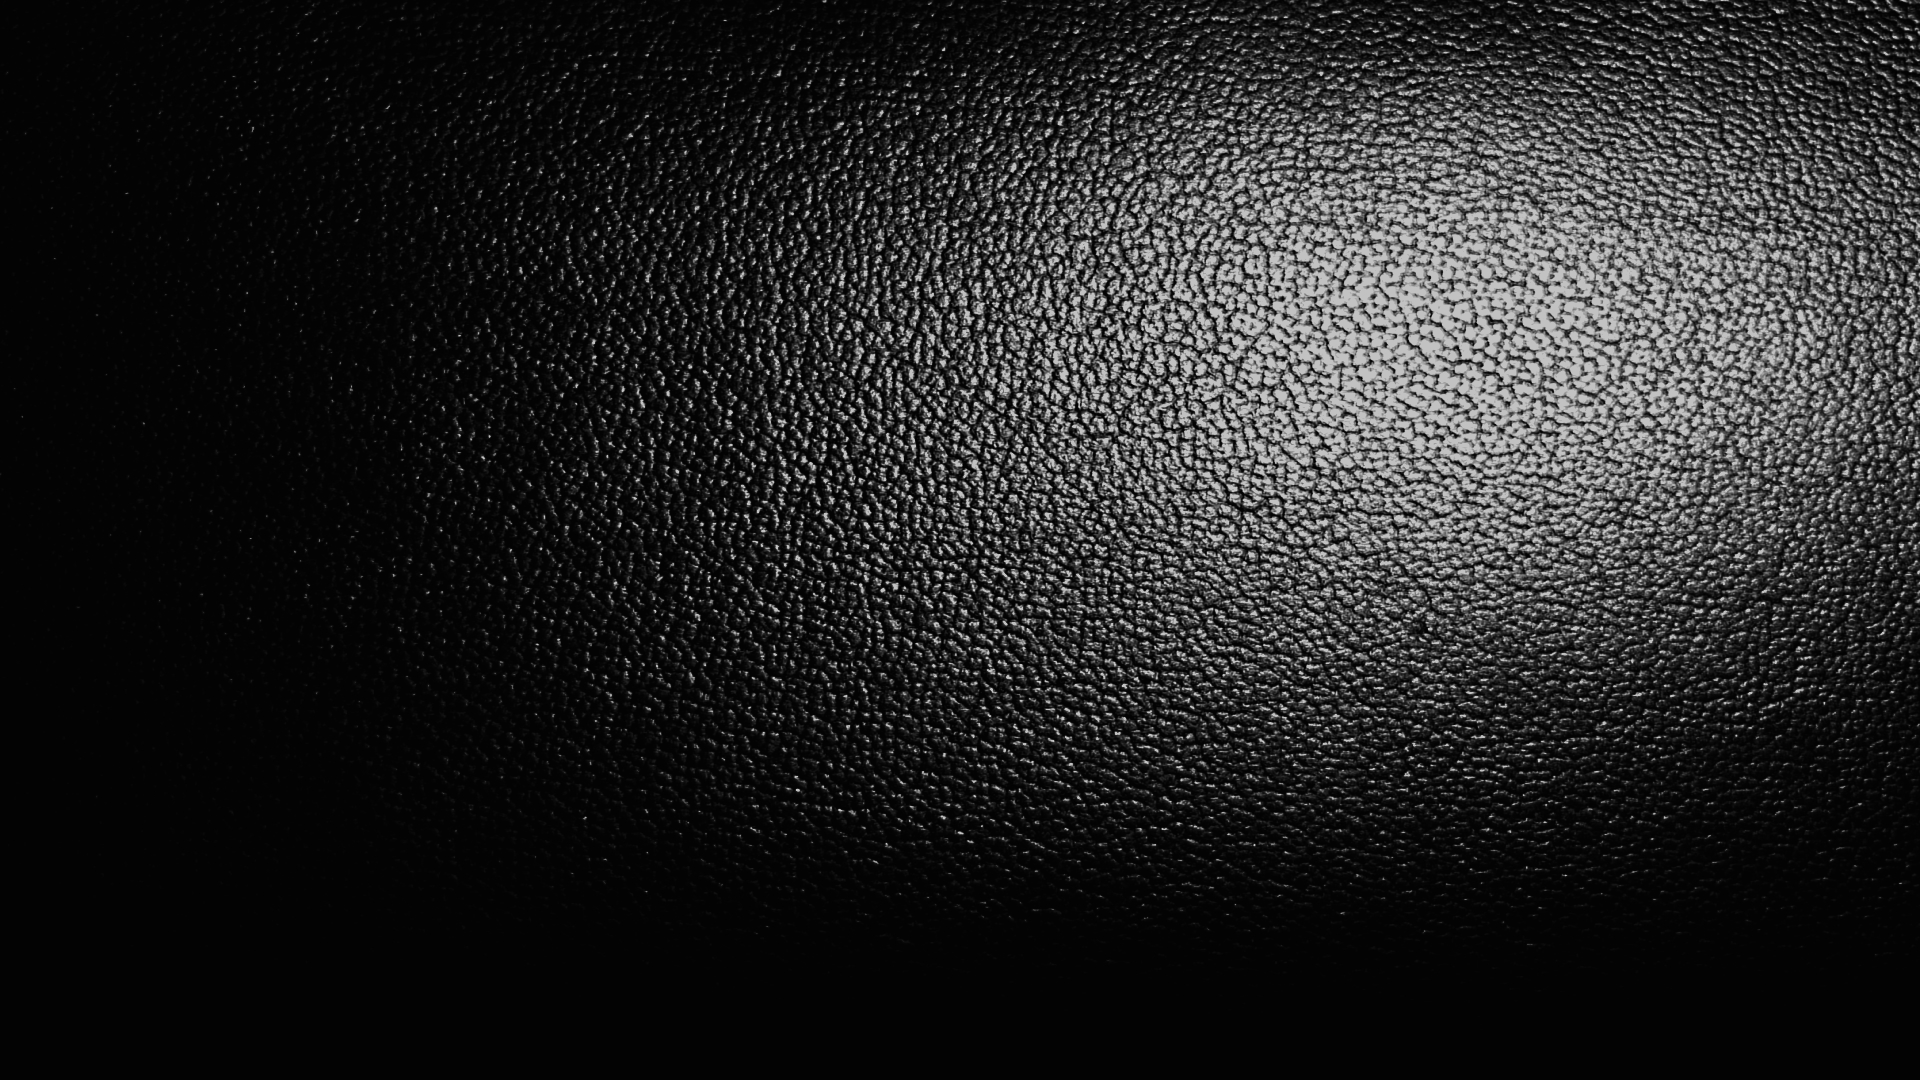 textures desktop wallpaper download leather textures wallpaper in hd